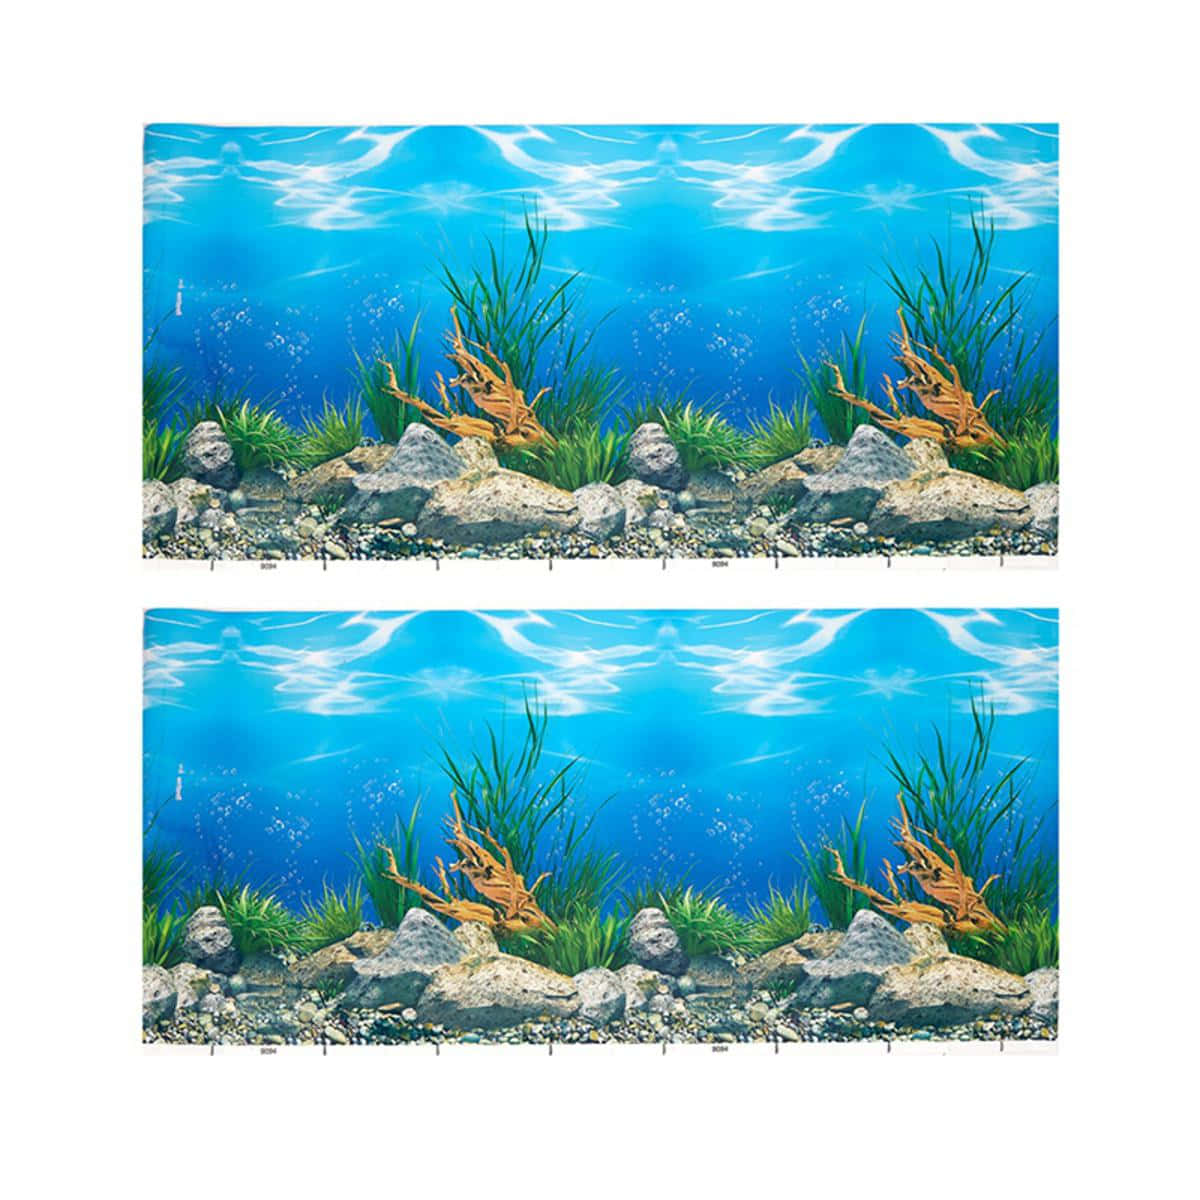 Vibrant Underwater Aquarium World Wallpaper